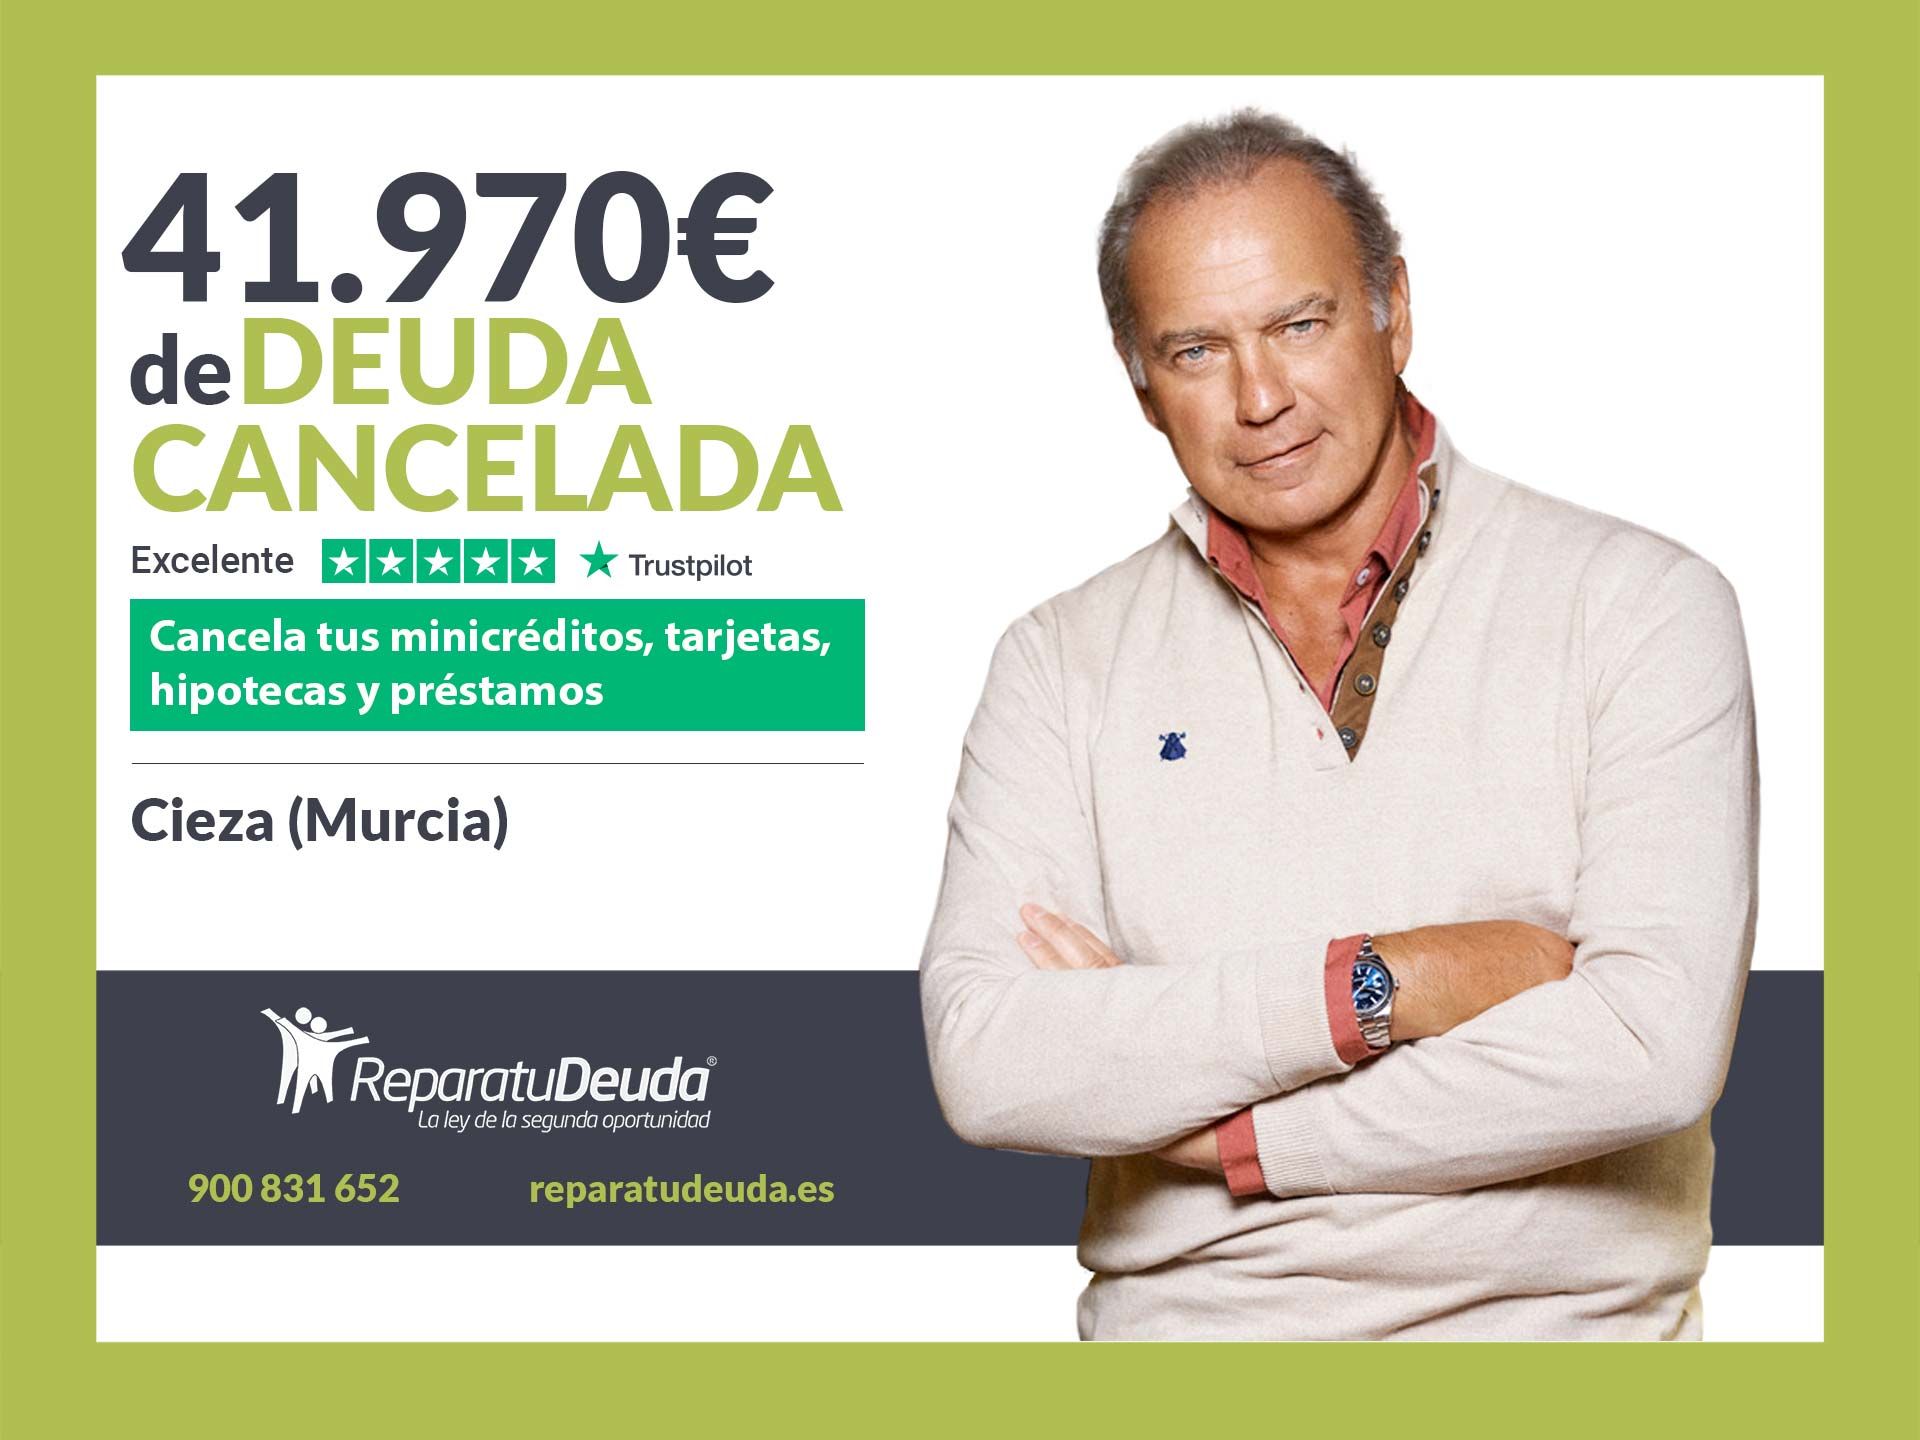 Repara tu Deuda Abogados cancela 41.970? en Cieza (Murcia) con la Ley de Segunda Oportunidad